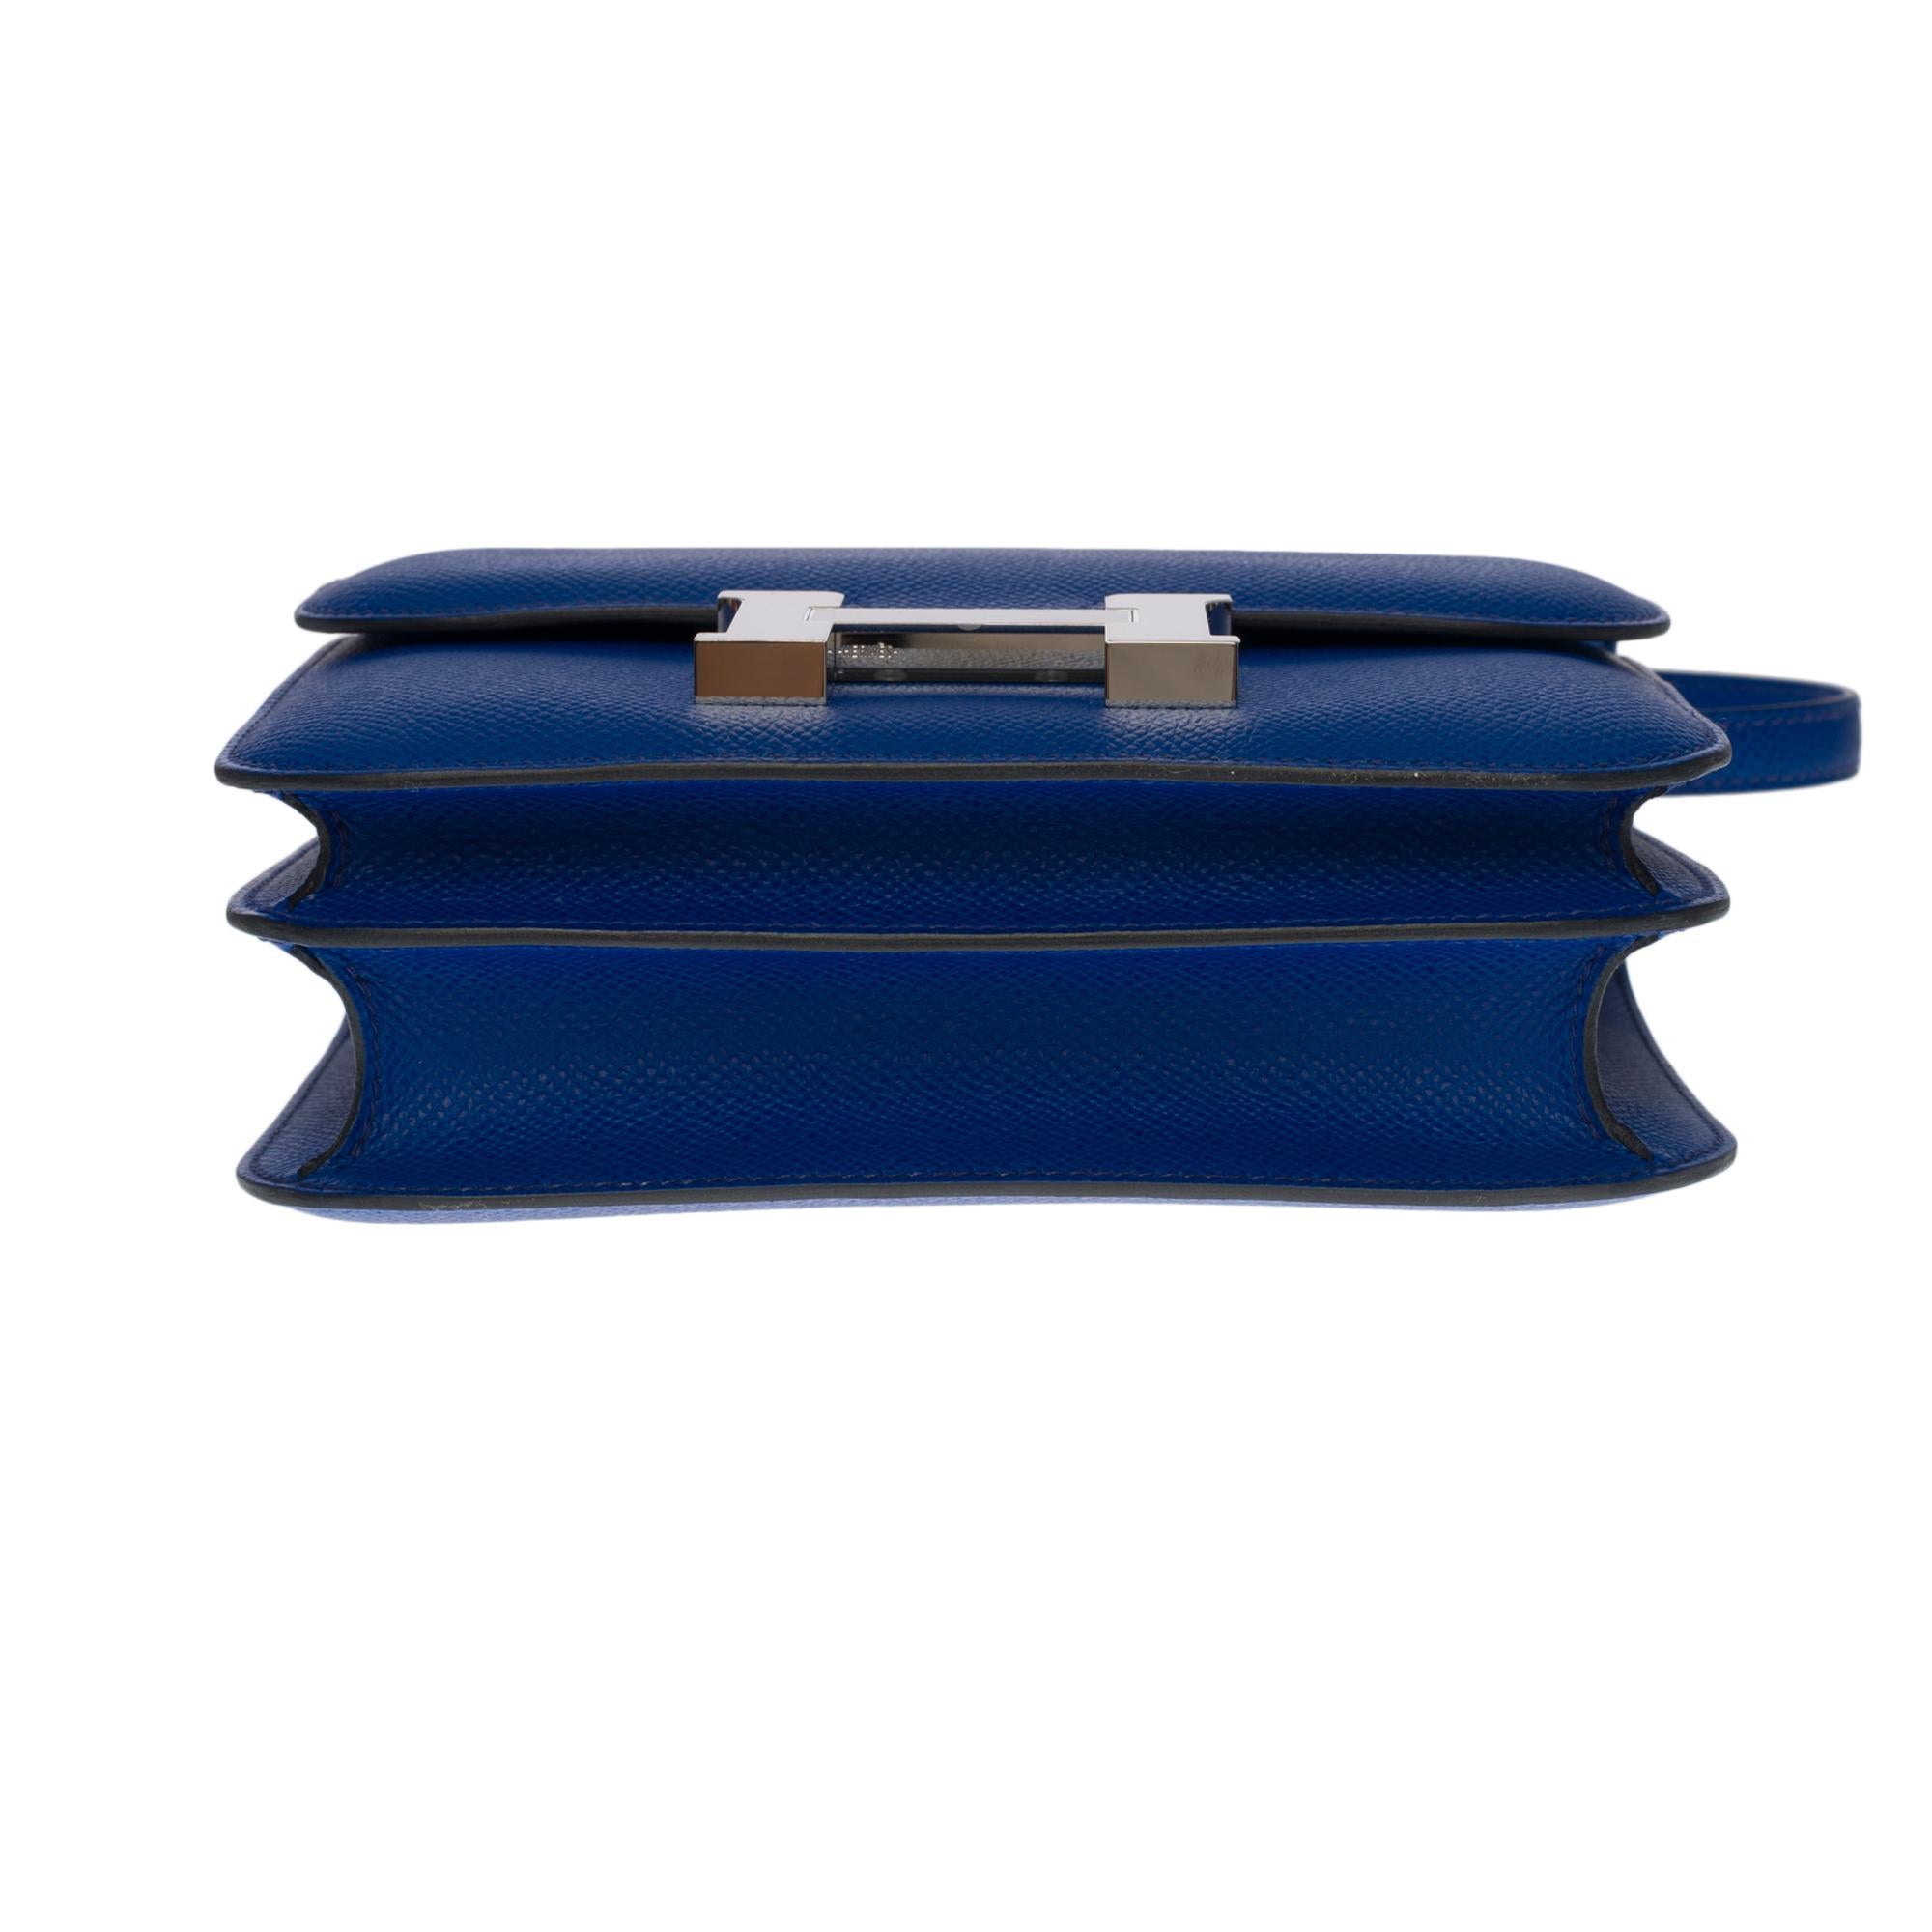 Brand New -Hermes Mini Constance 18 shoulder bag in bleu royal epsom leather, SHW 2